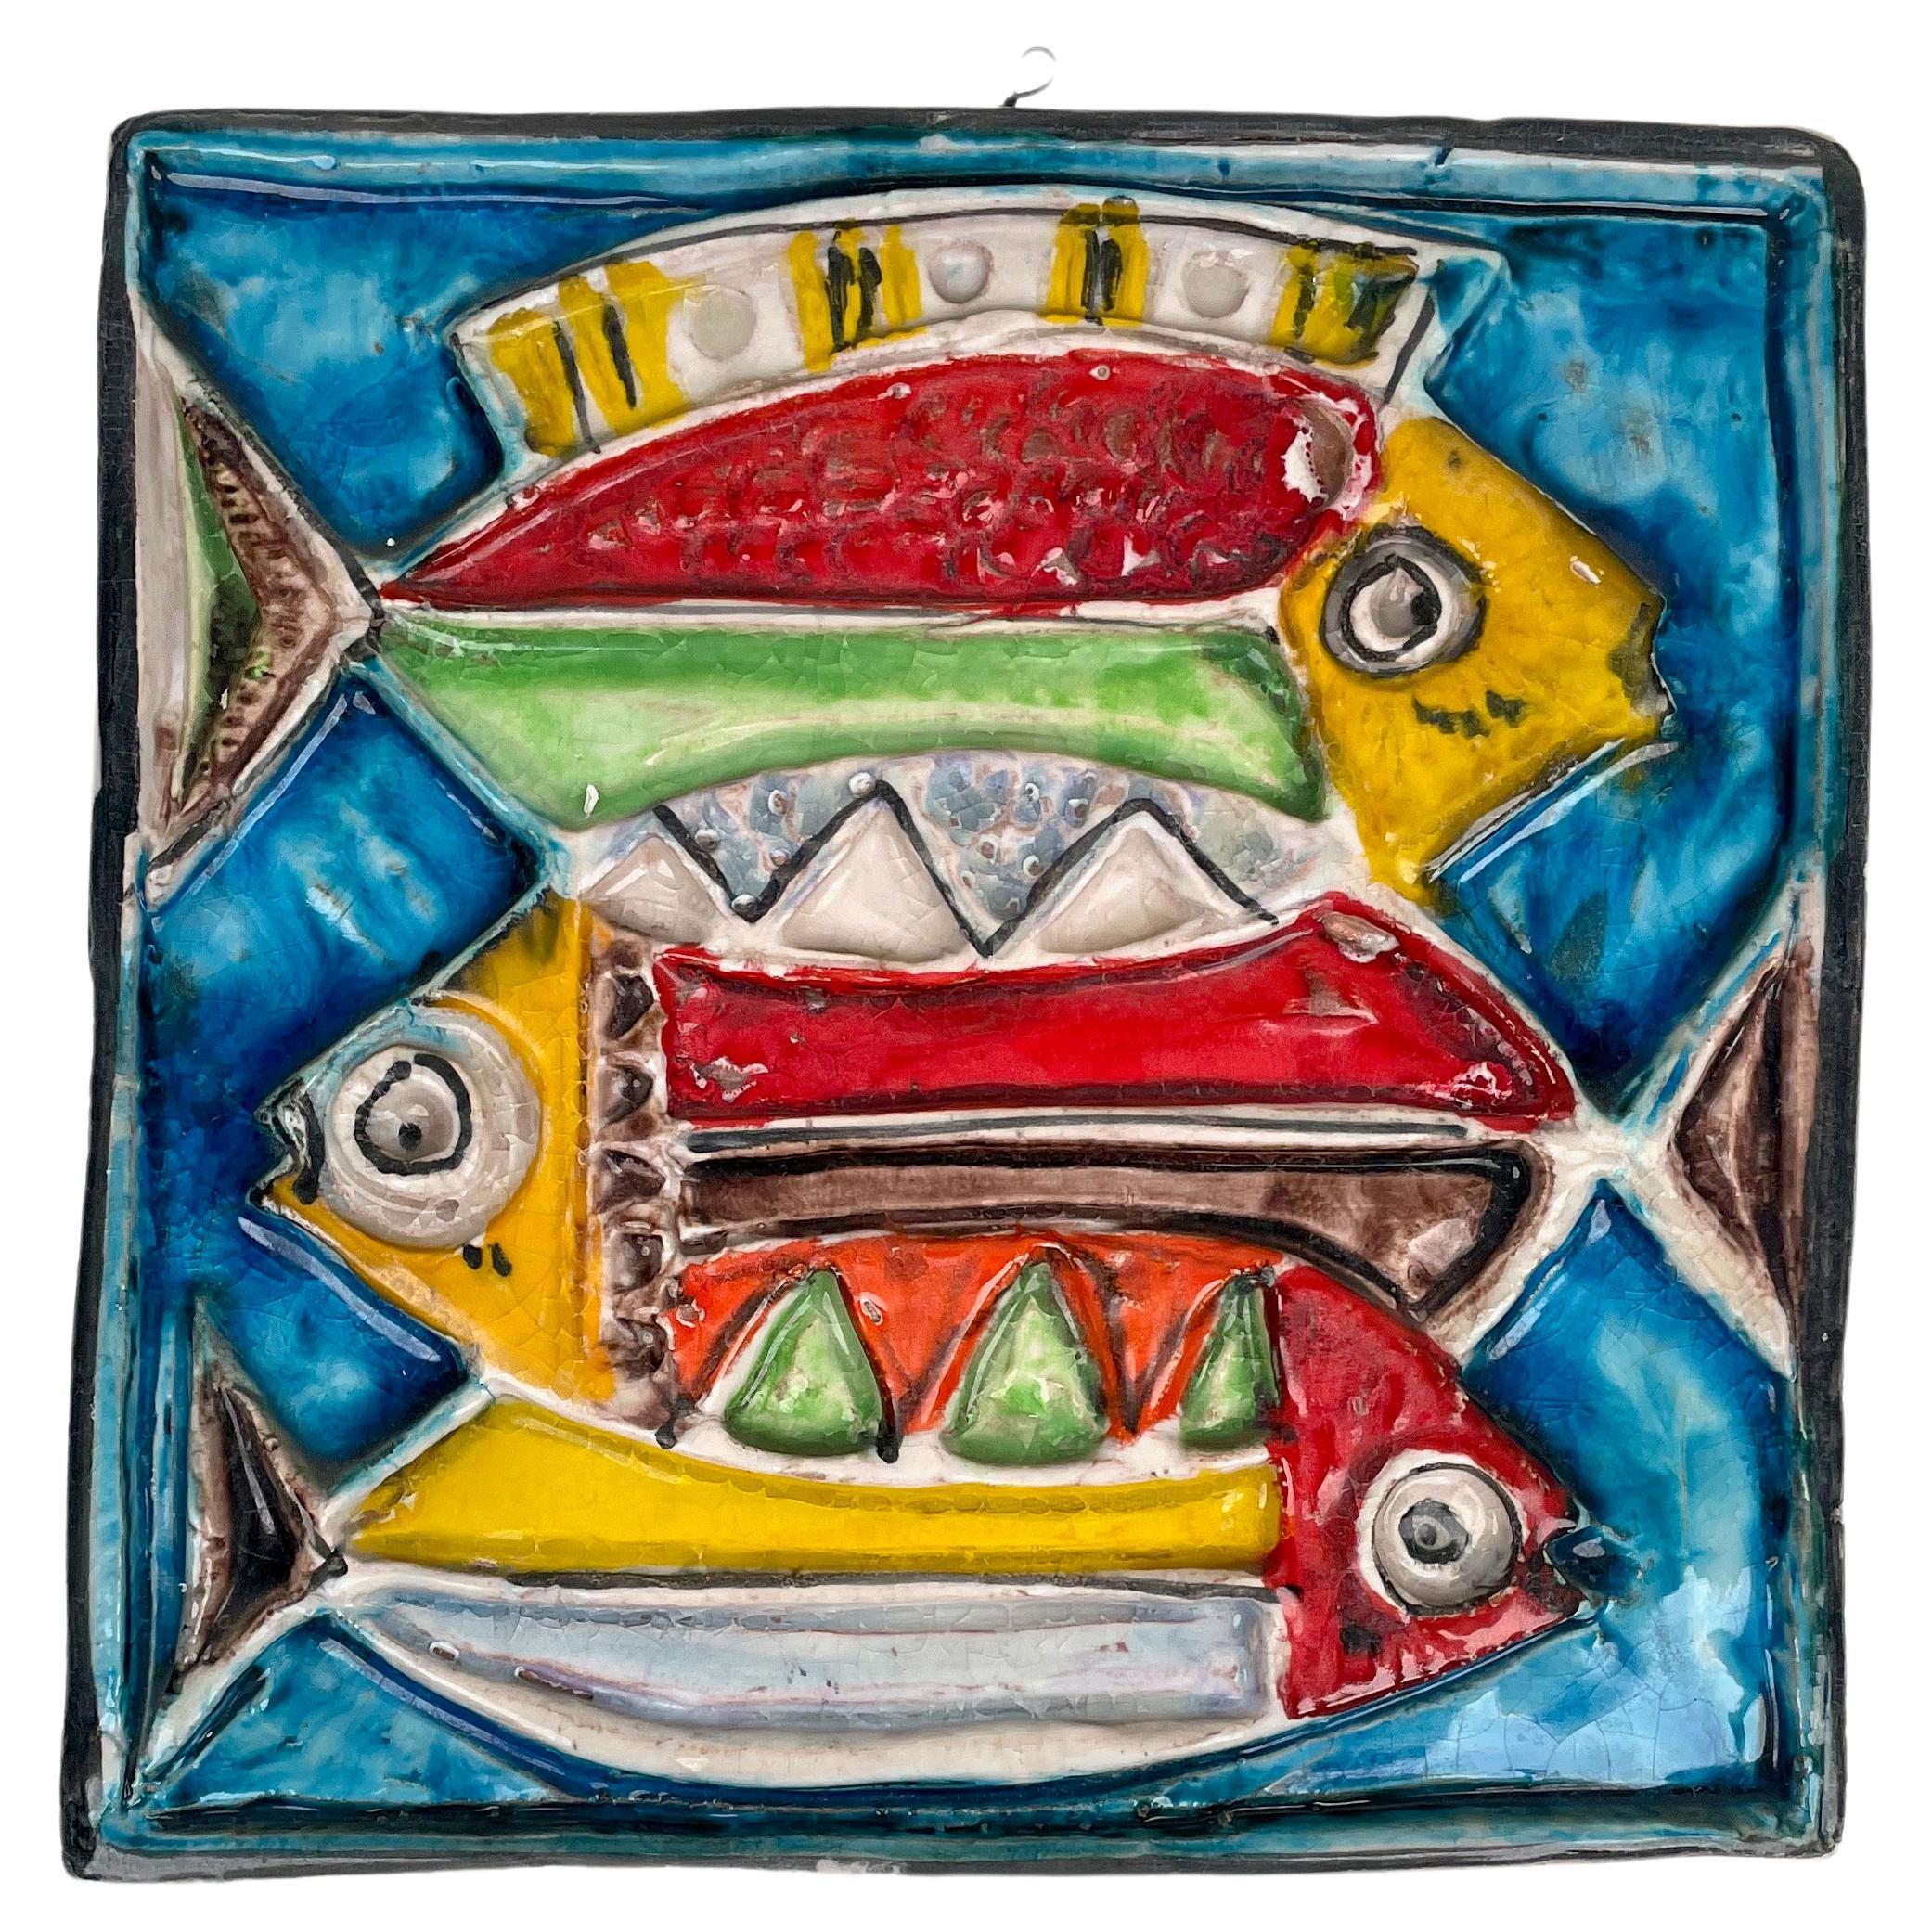 Giovanni de Simone Colored Ceramic Fish Squared Tile Plate, Italy 1960s For Sale